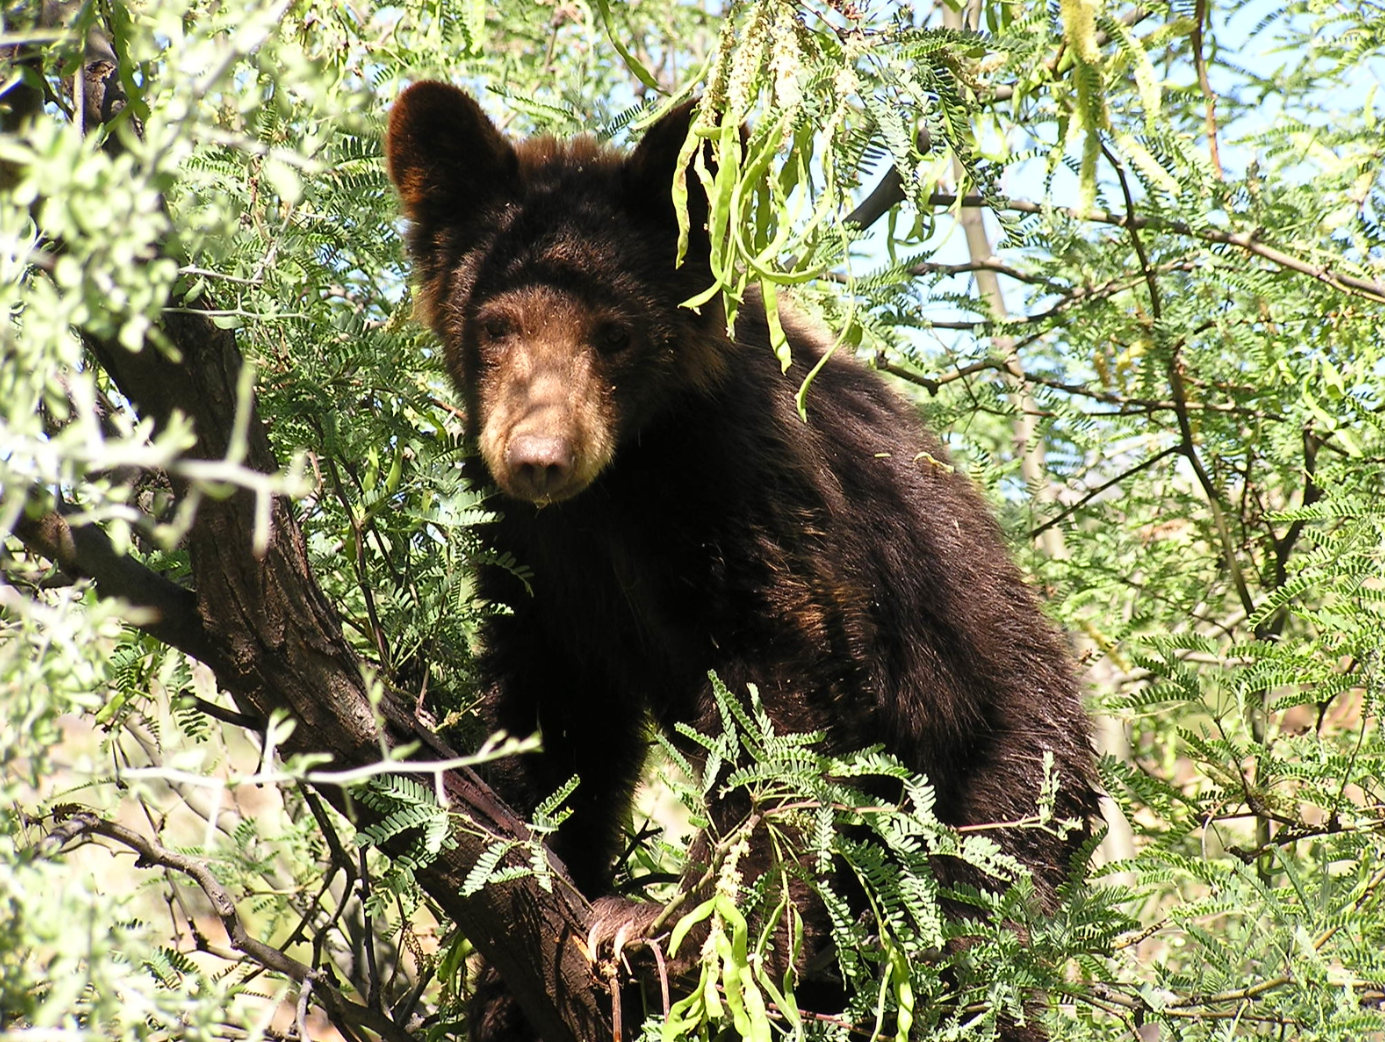 Small black bear in tree looks into camera